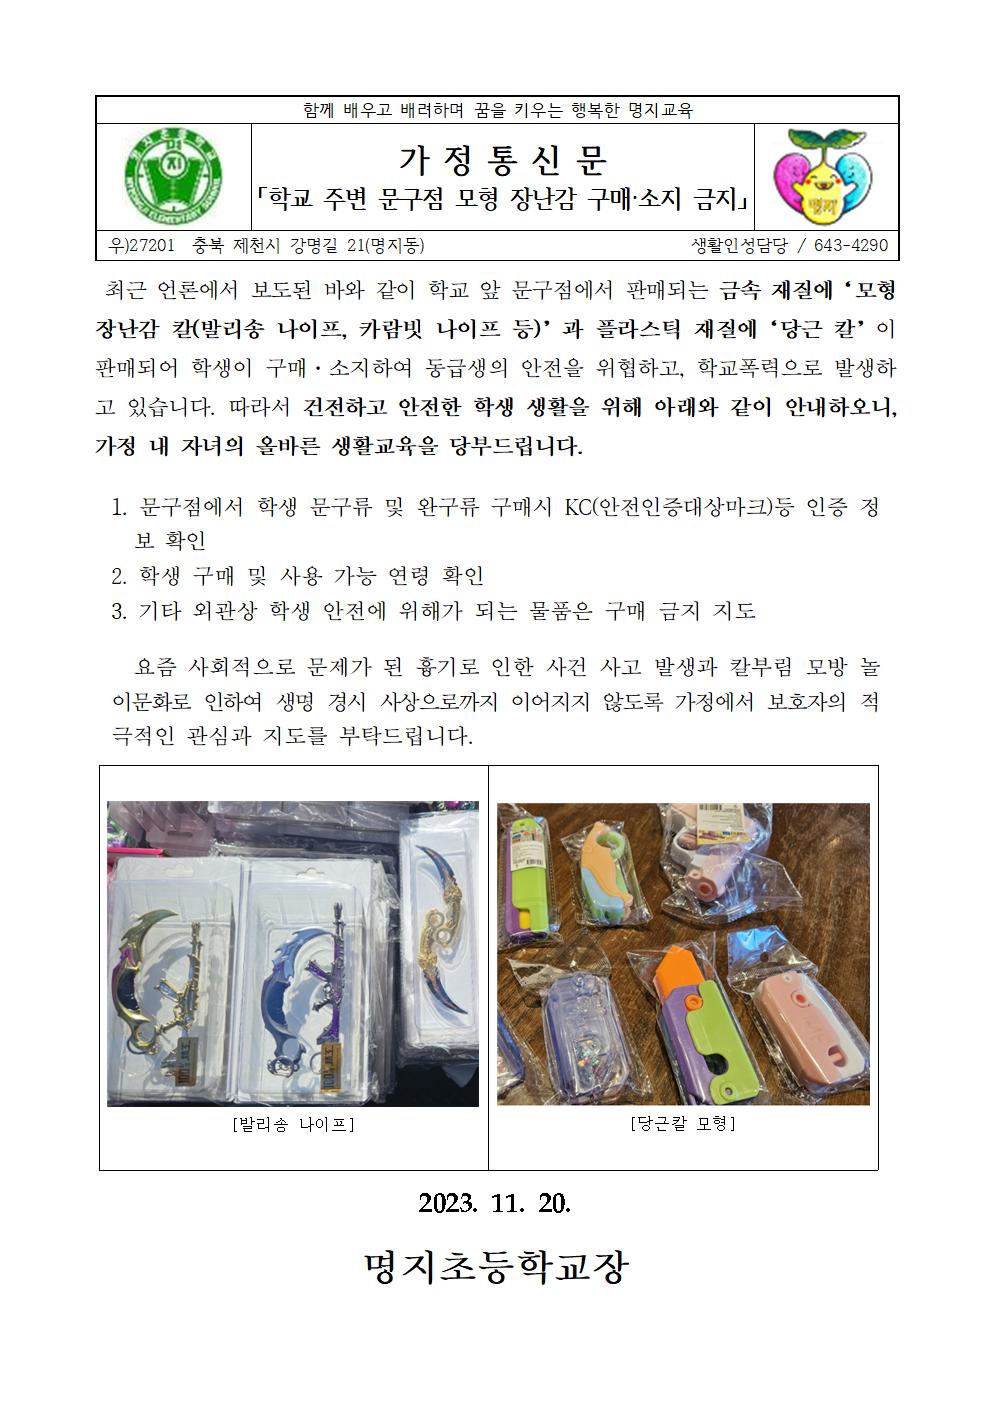 2023년 모형 장난감 구매금지 가정통신문001